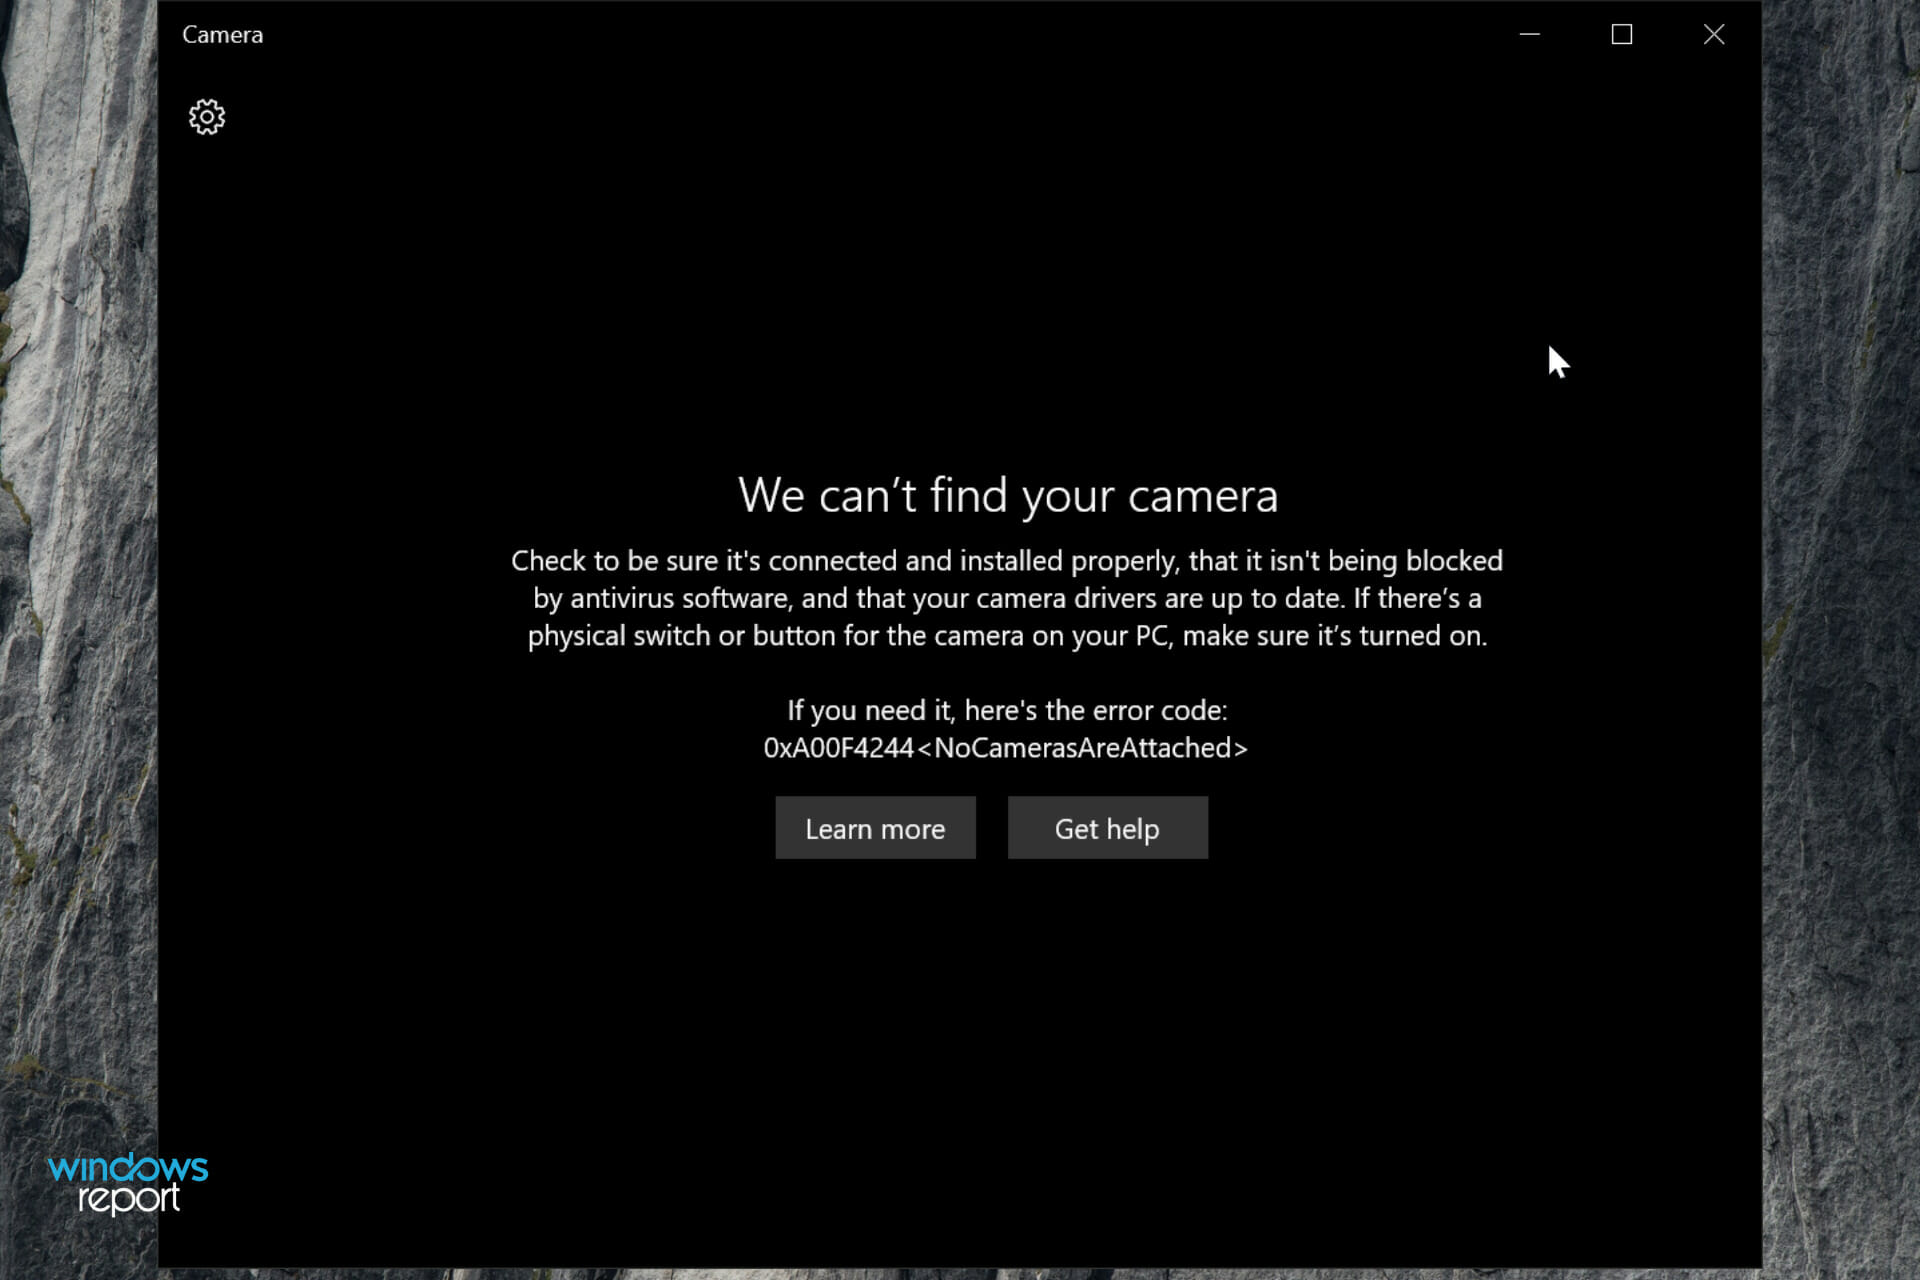 REVISIÓN: la aplicación de la cámara no funciona en Windows 10